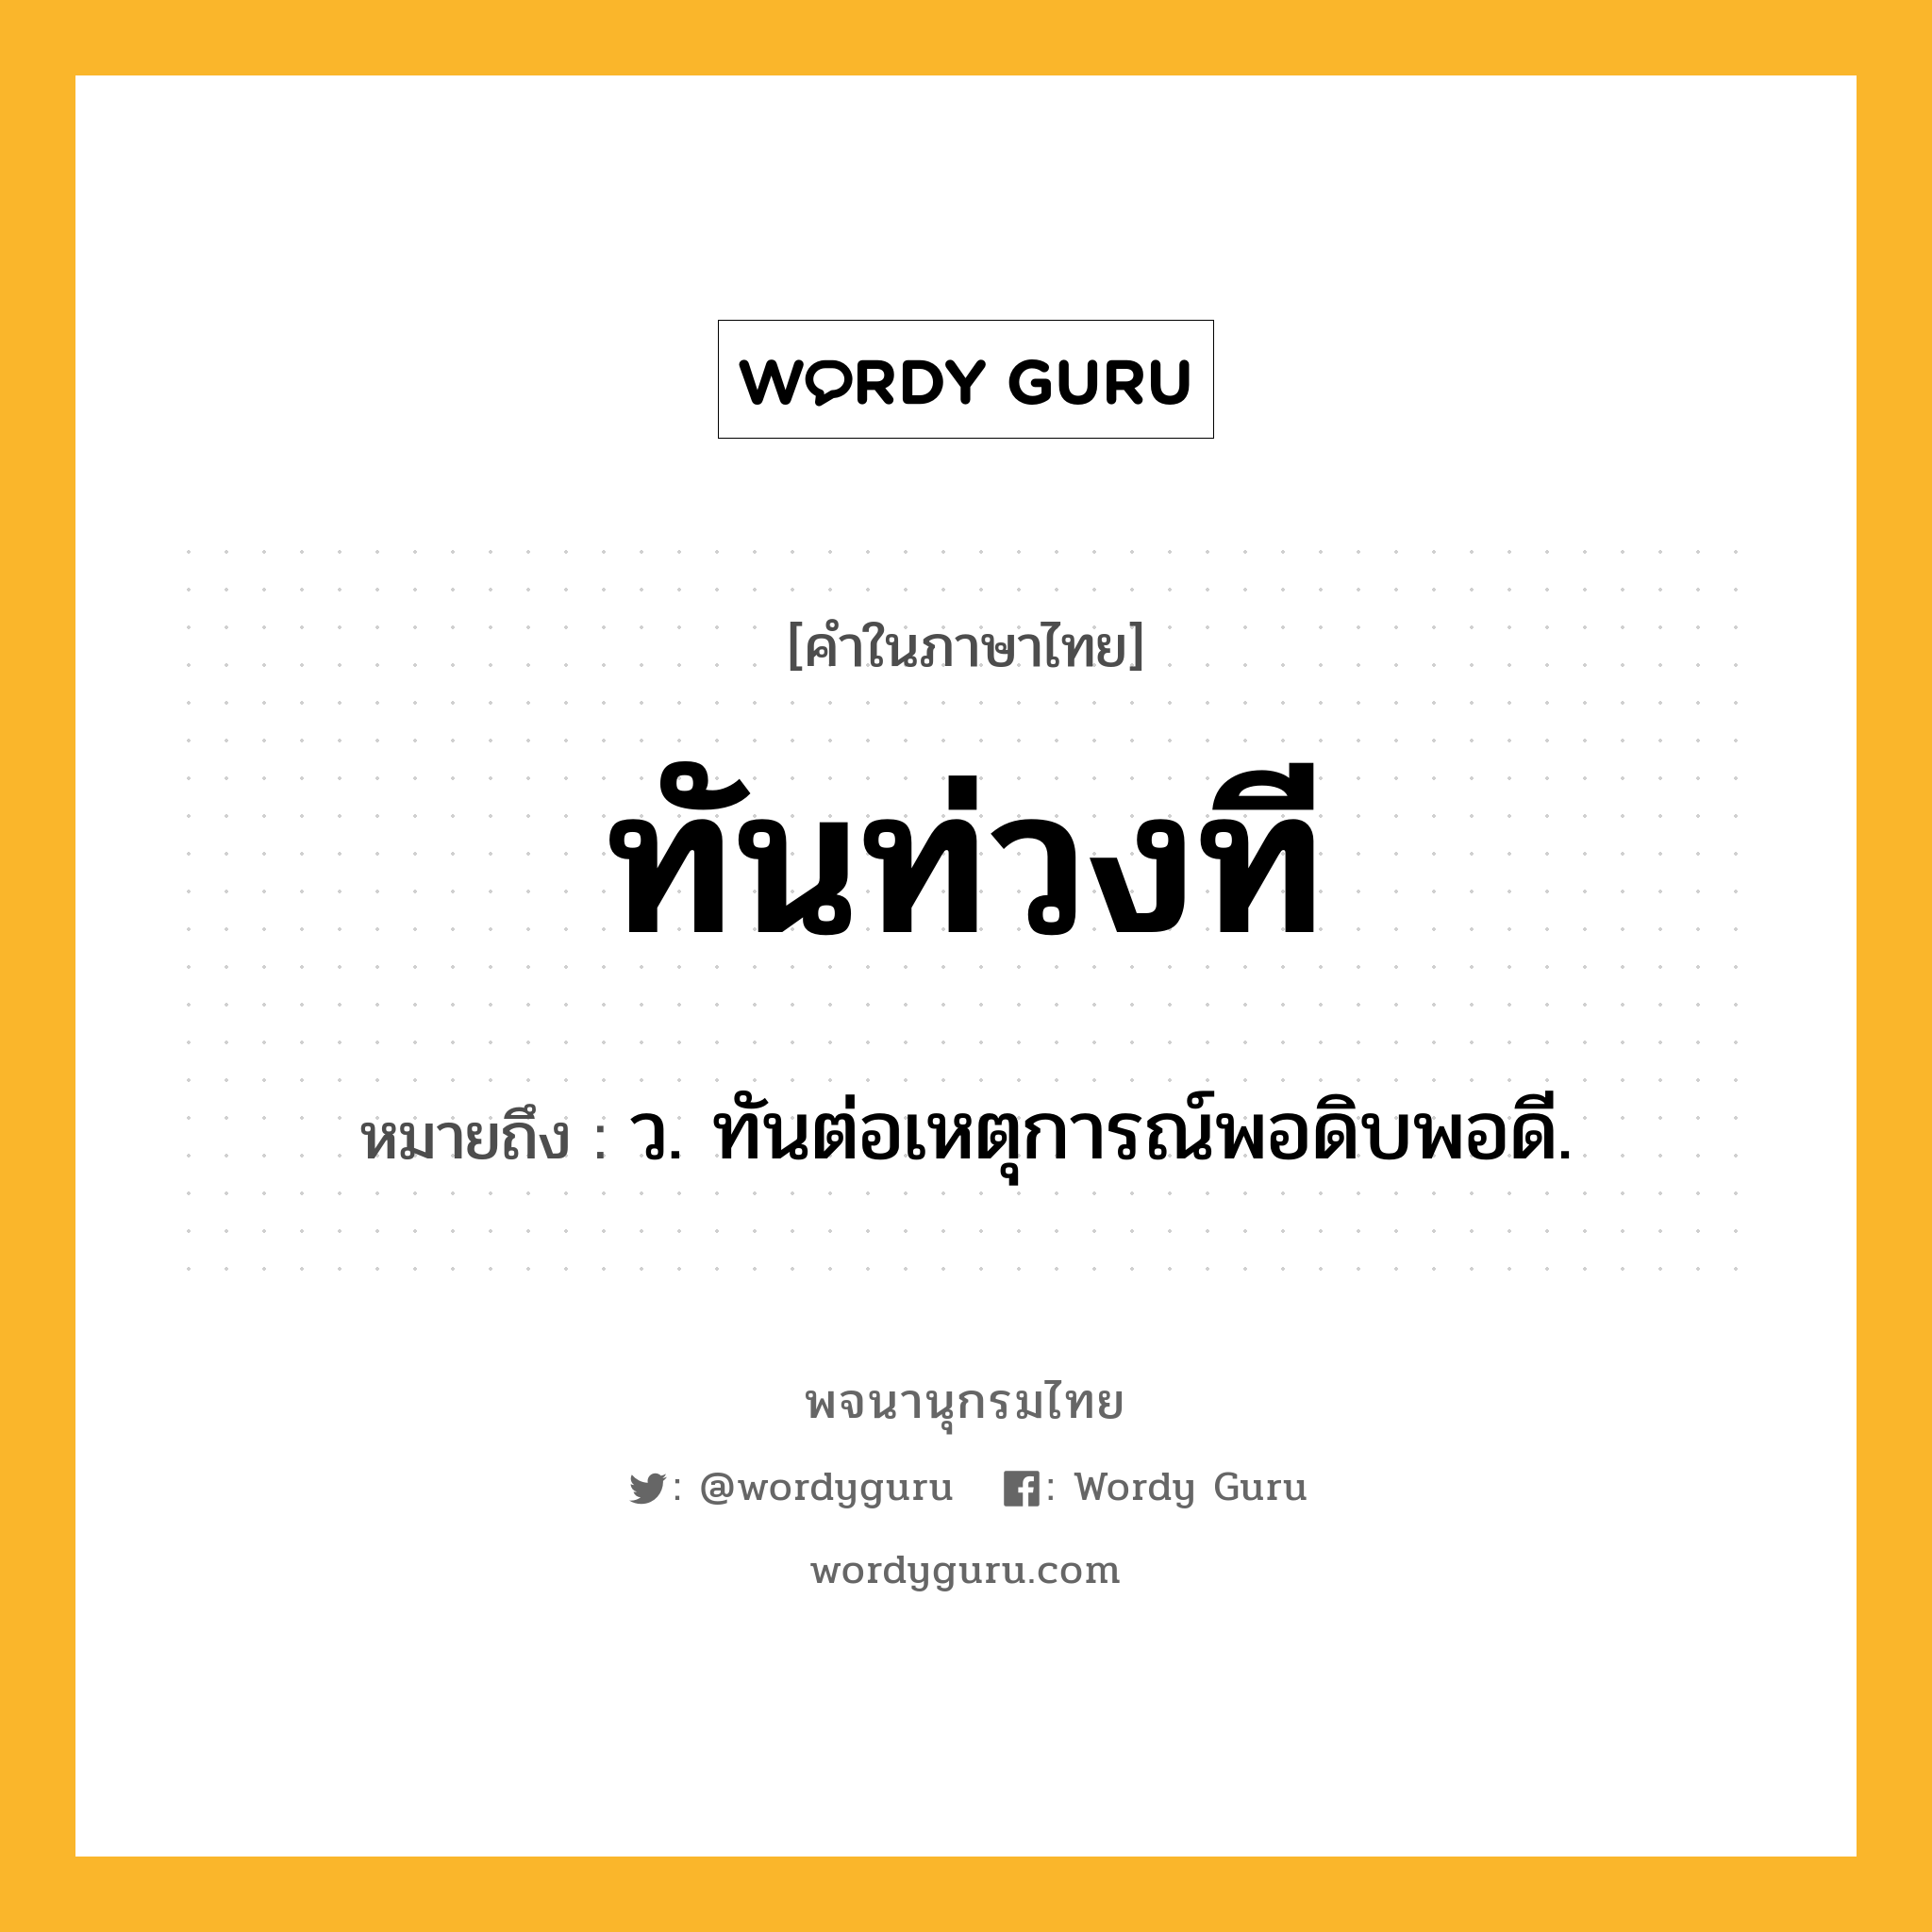 ทันท่วงที ความหมาย หมายถึงอะไร?, คำในภาษาไทย ทันท่วงที หมายถึง ว. ทันต่อเหตุการณ์พอดิบพอดี.